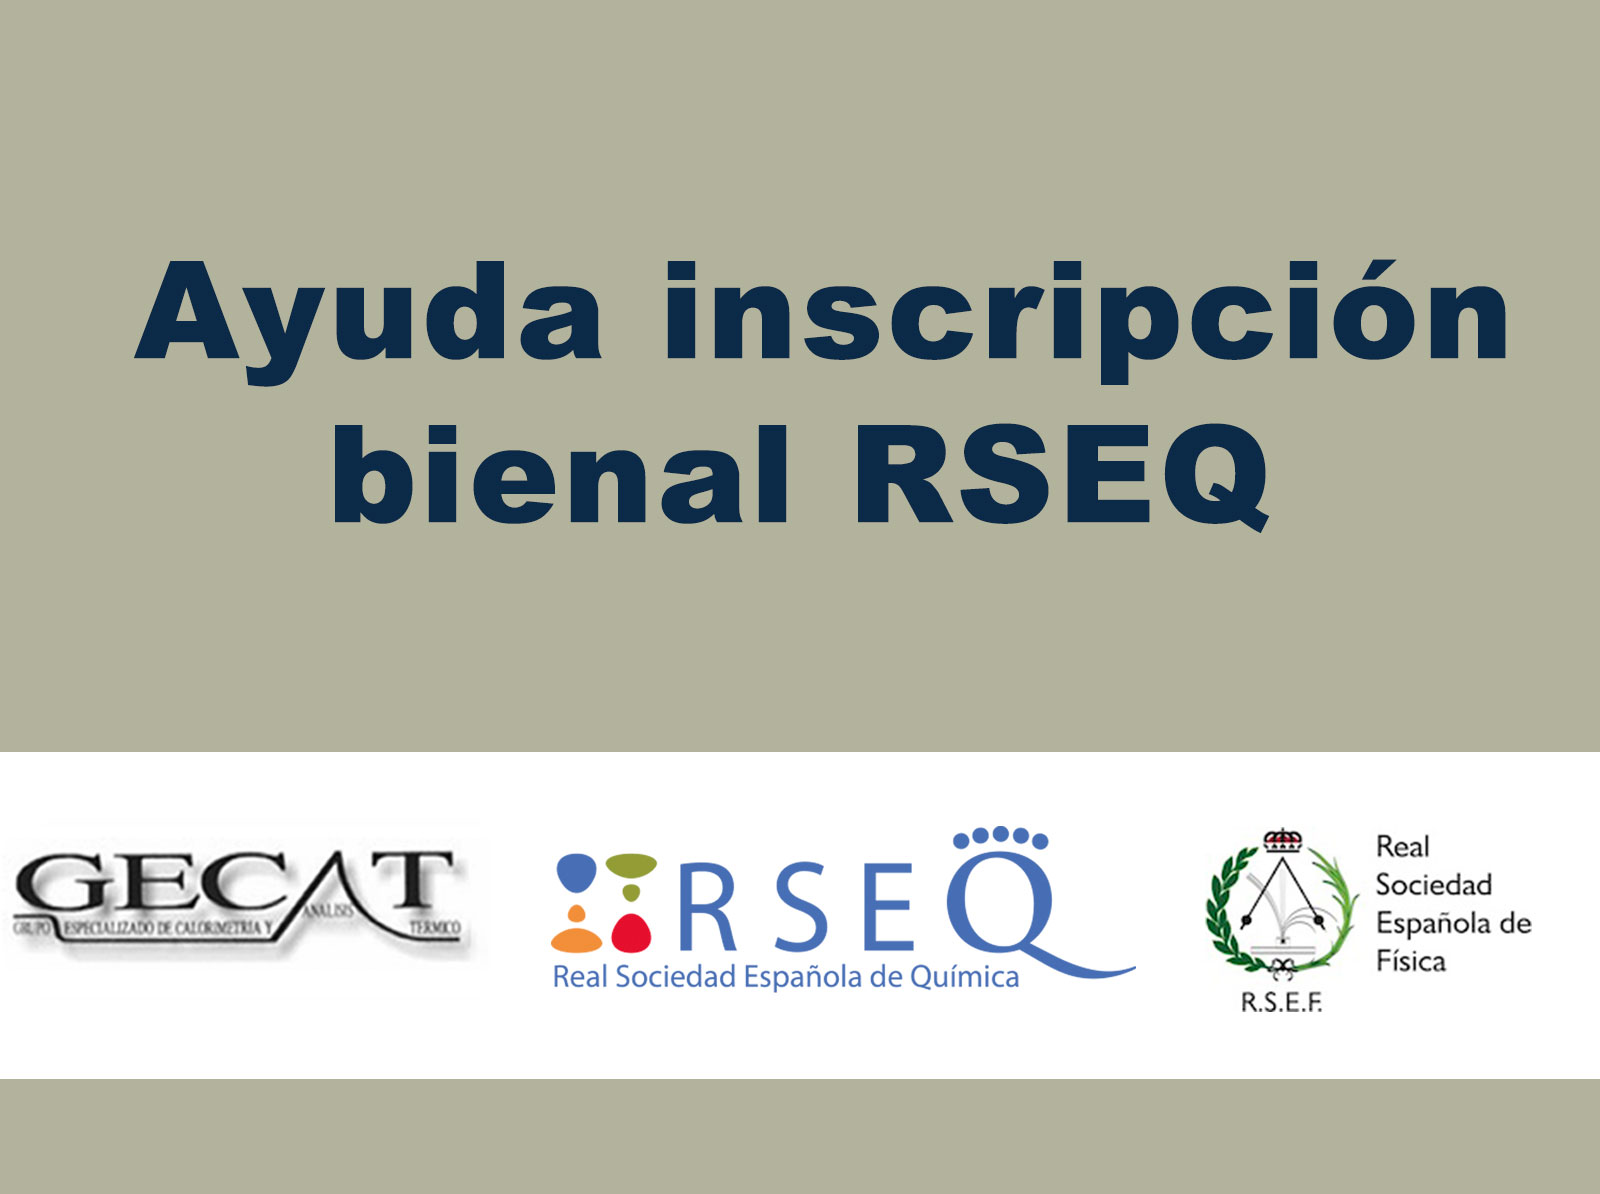 Ayuda inscripción bienal RSEQ